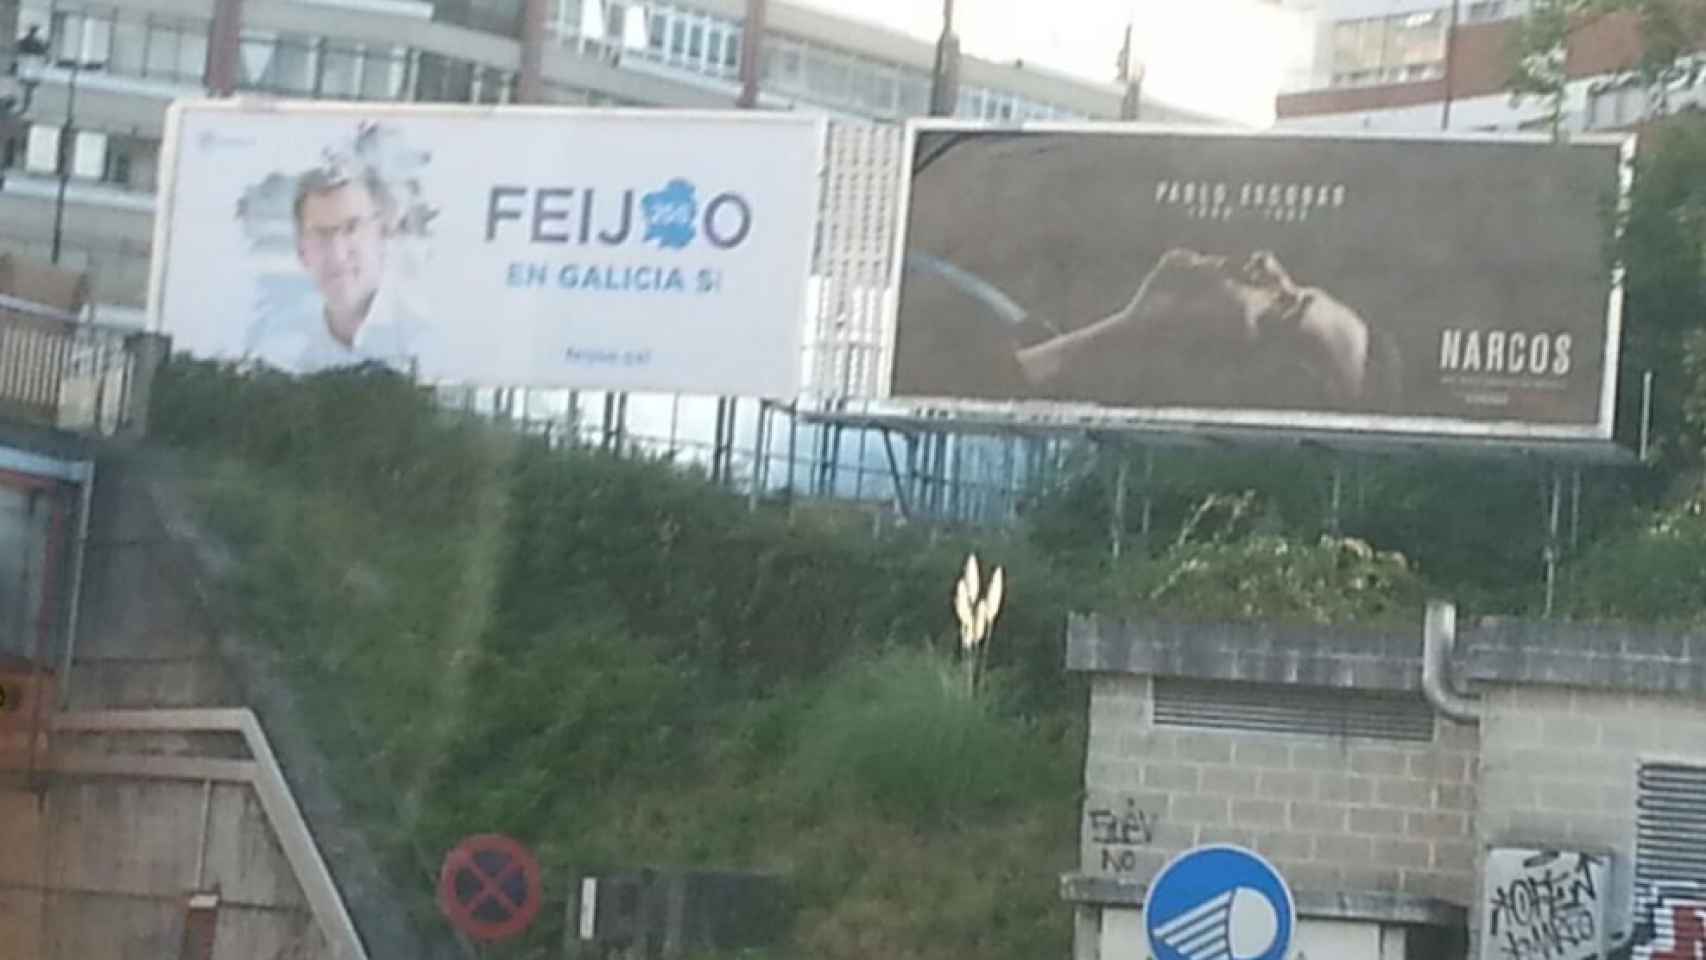 El cartel electoral de Feijoo junto a la publicidad de Narcos.